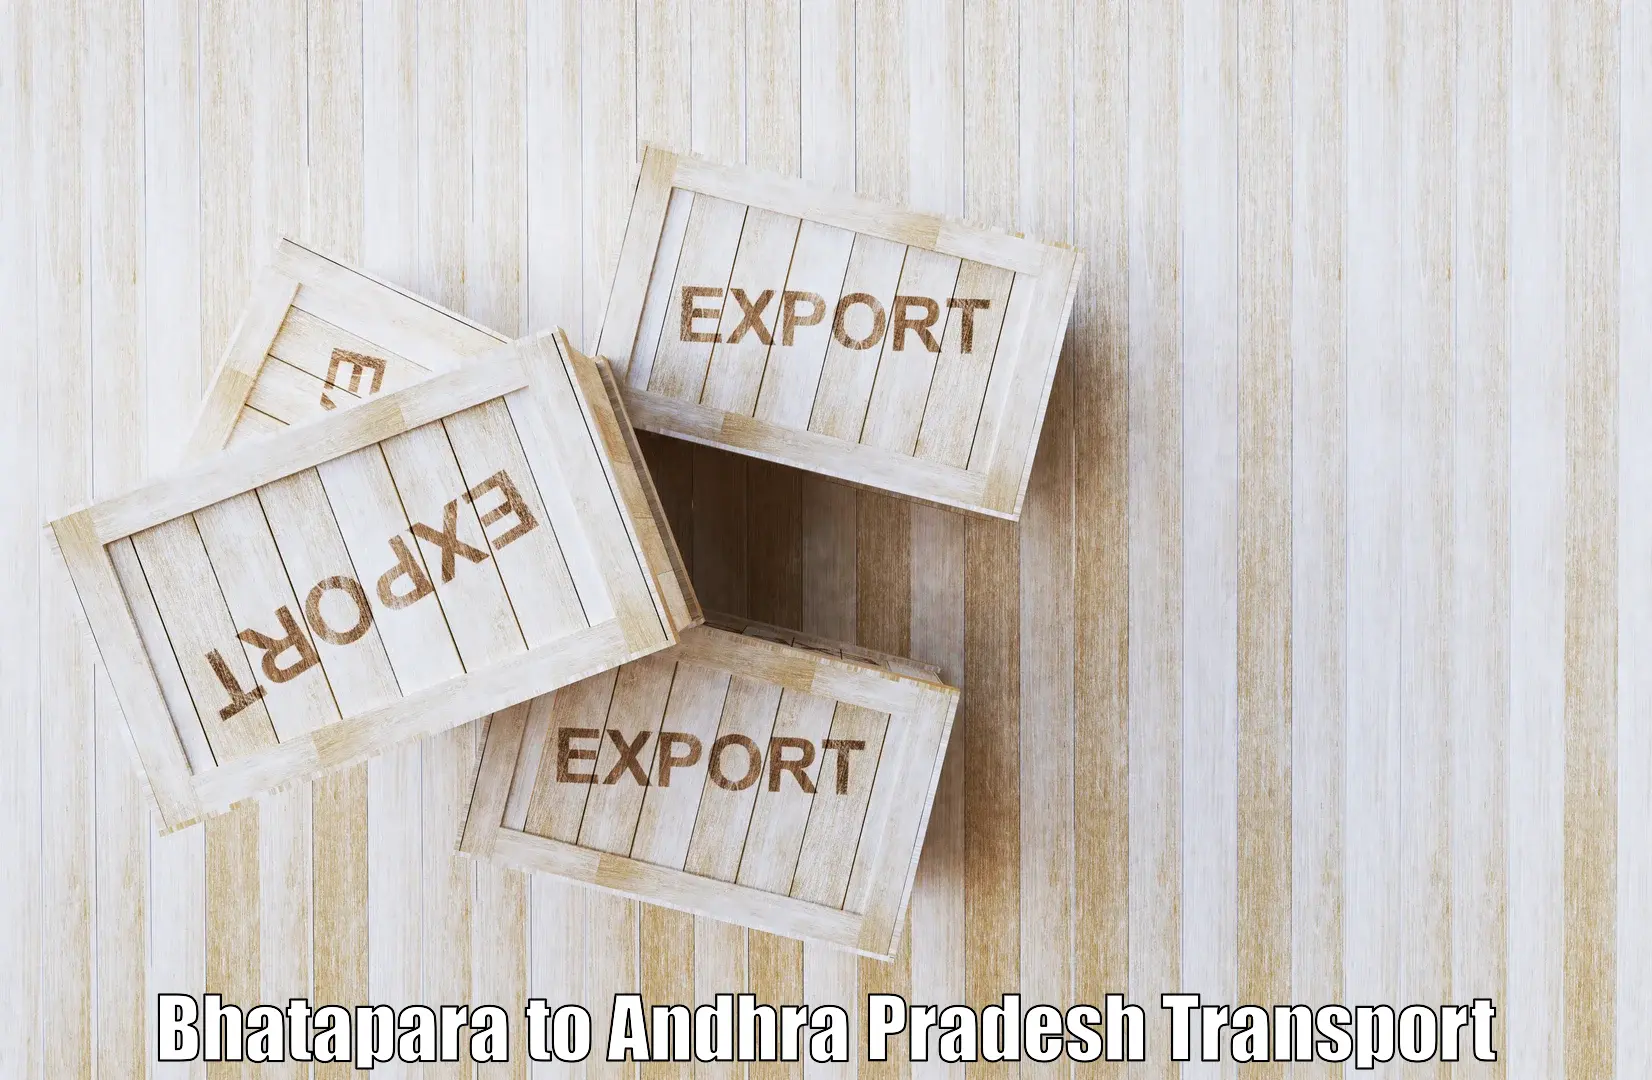 Online transport booking Bhatapara to Andhra Pradesh